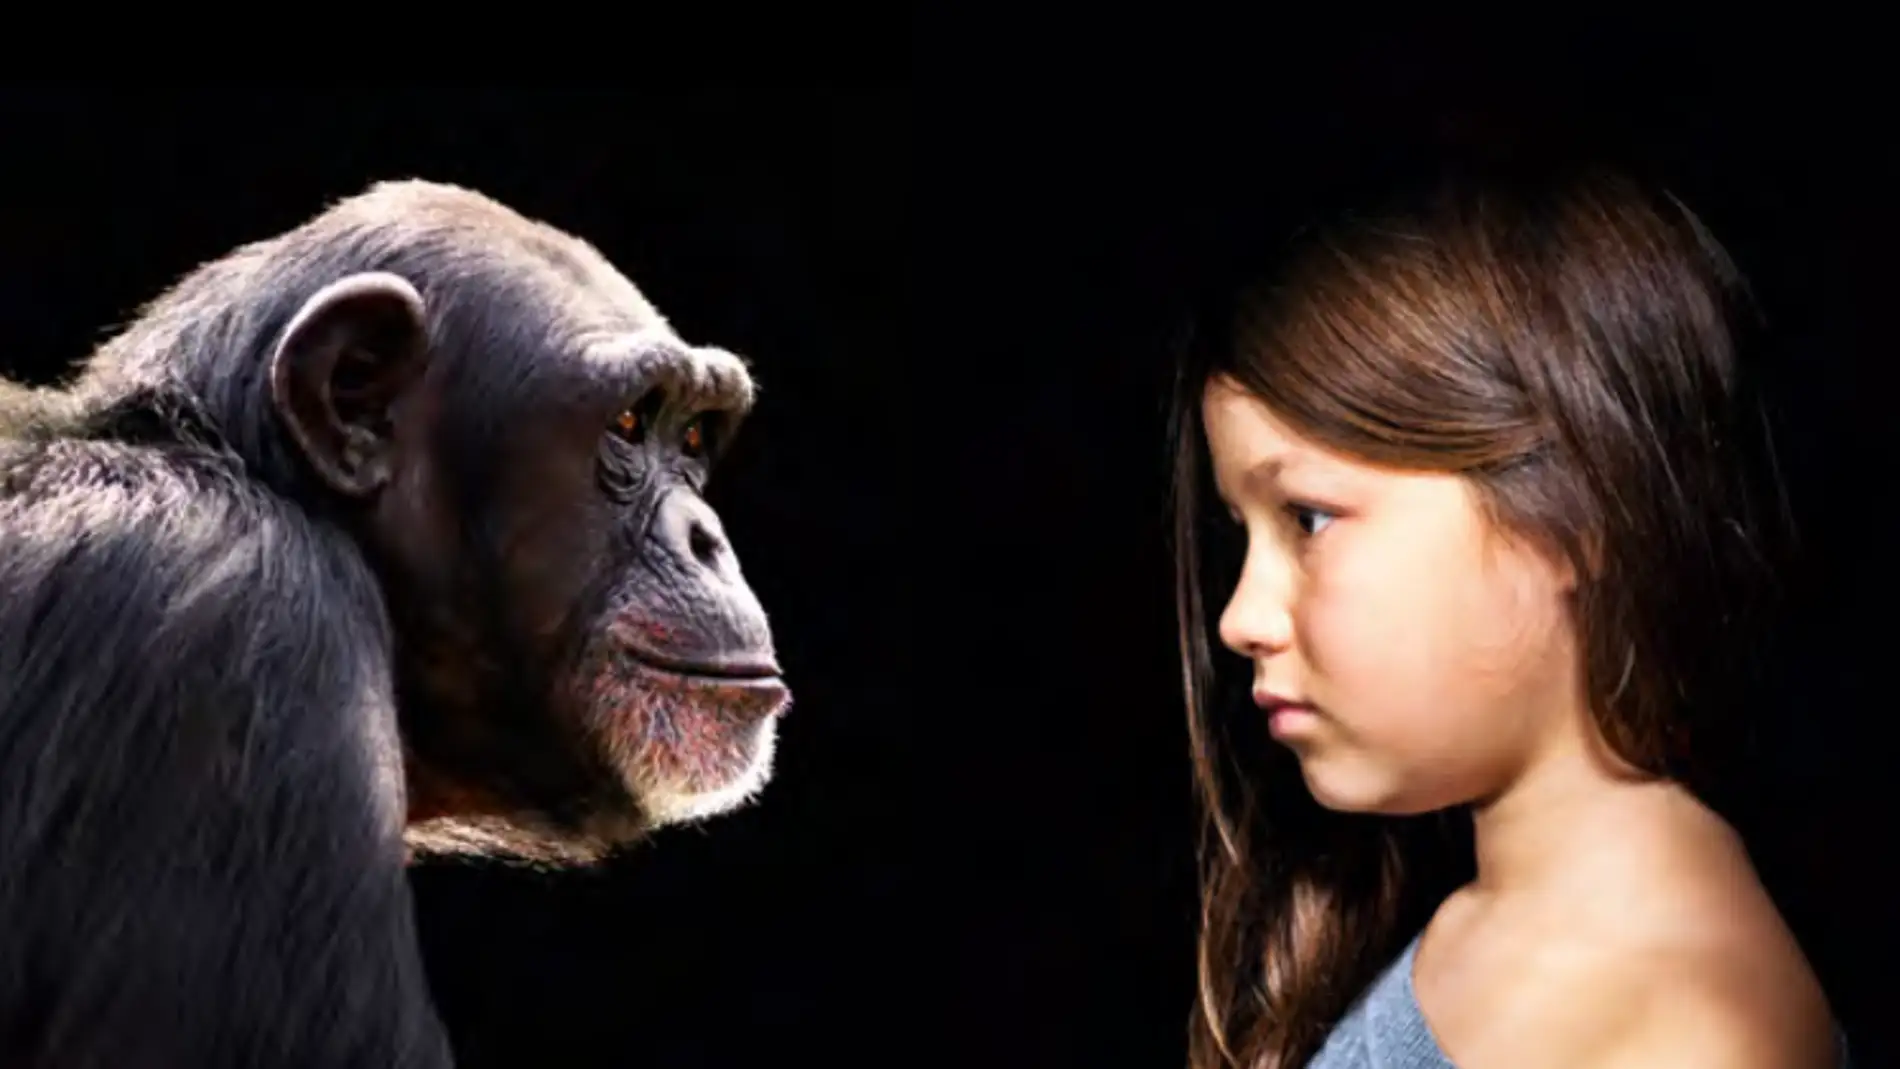 El gran cerebro de los primates se debe mas a la dieta que a su sociabilidad